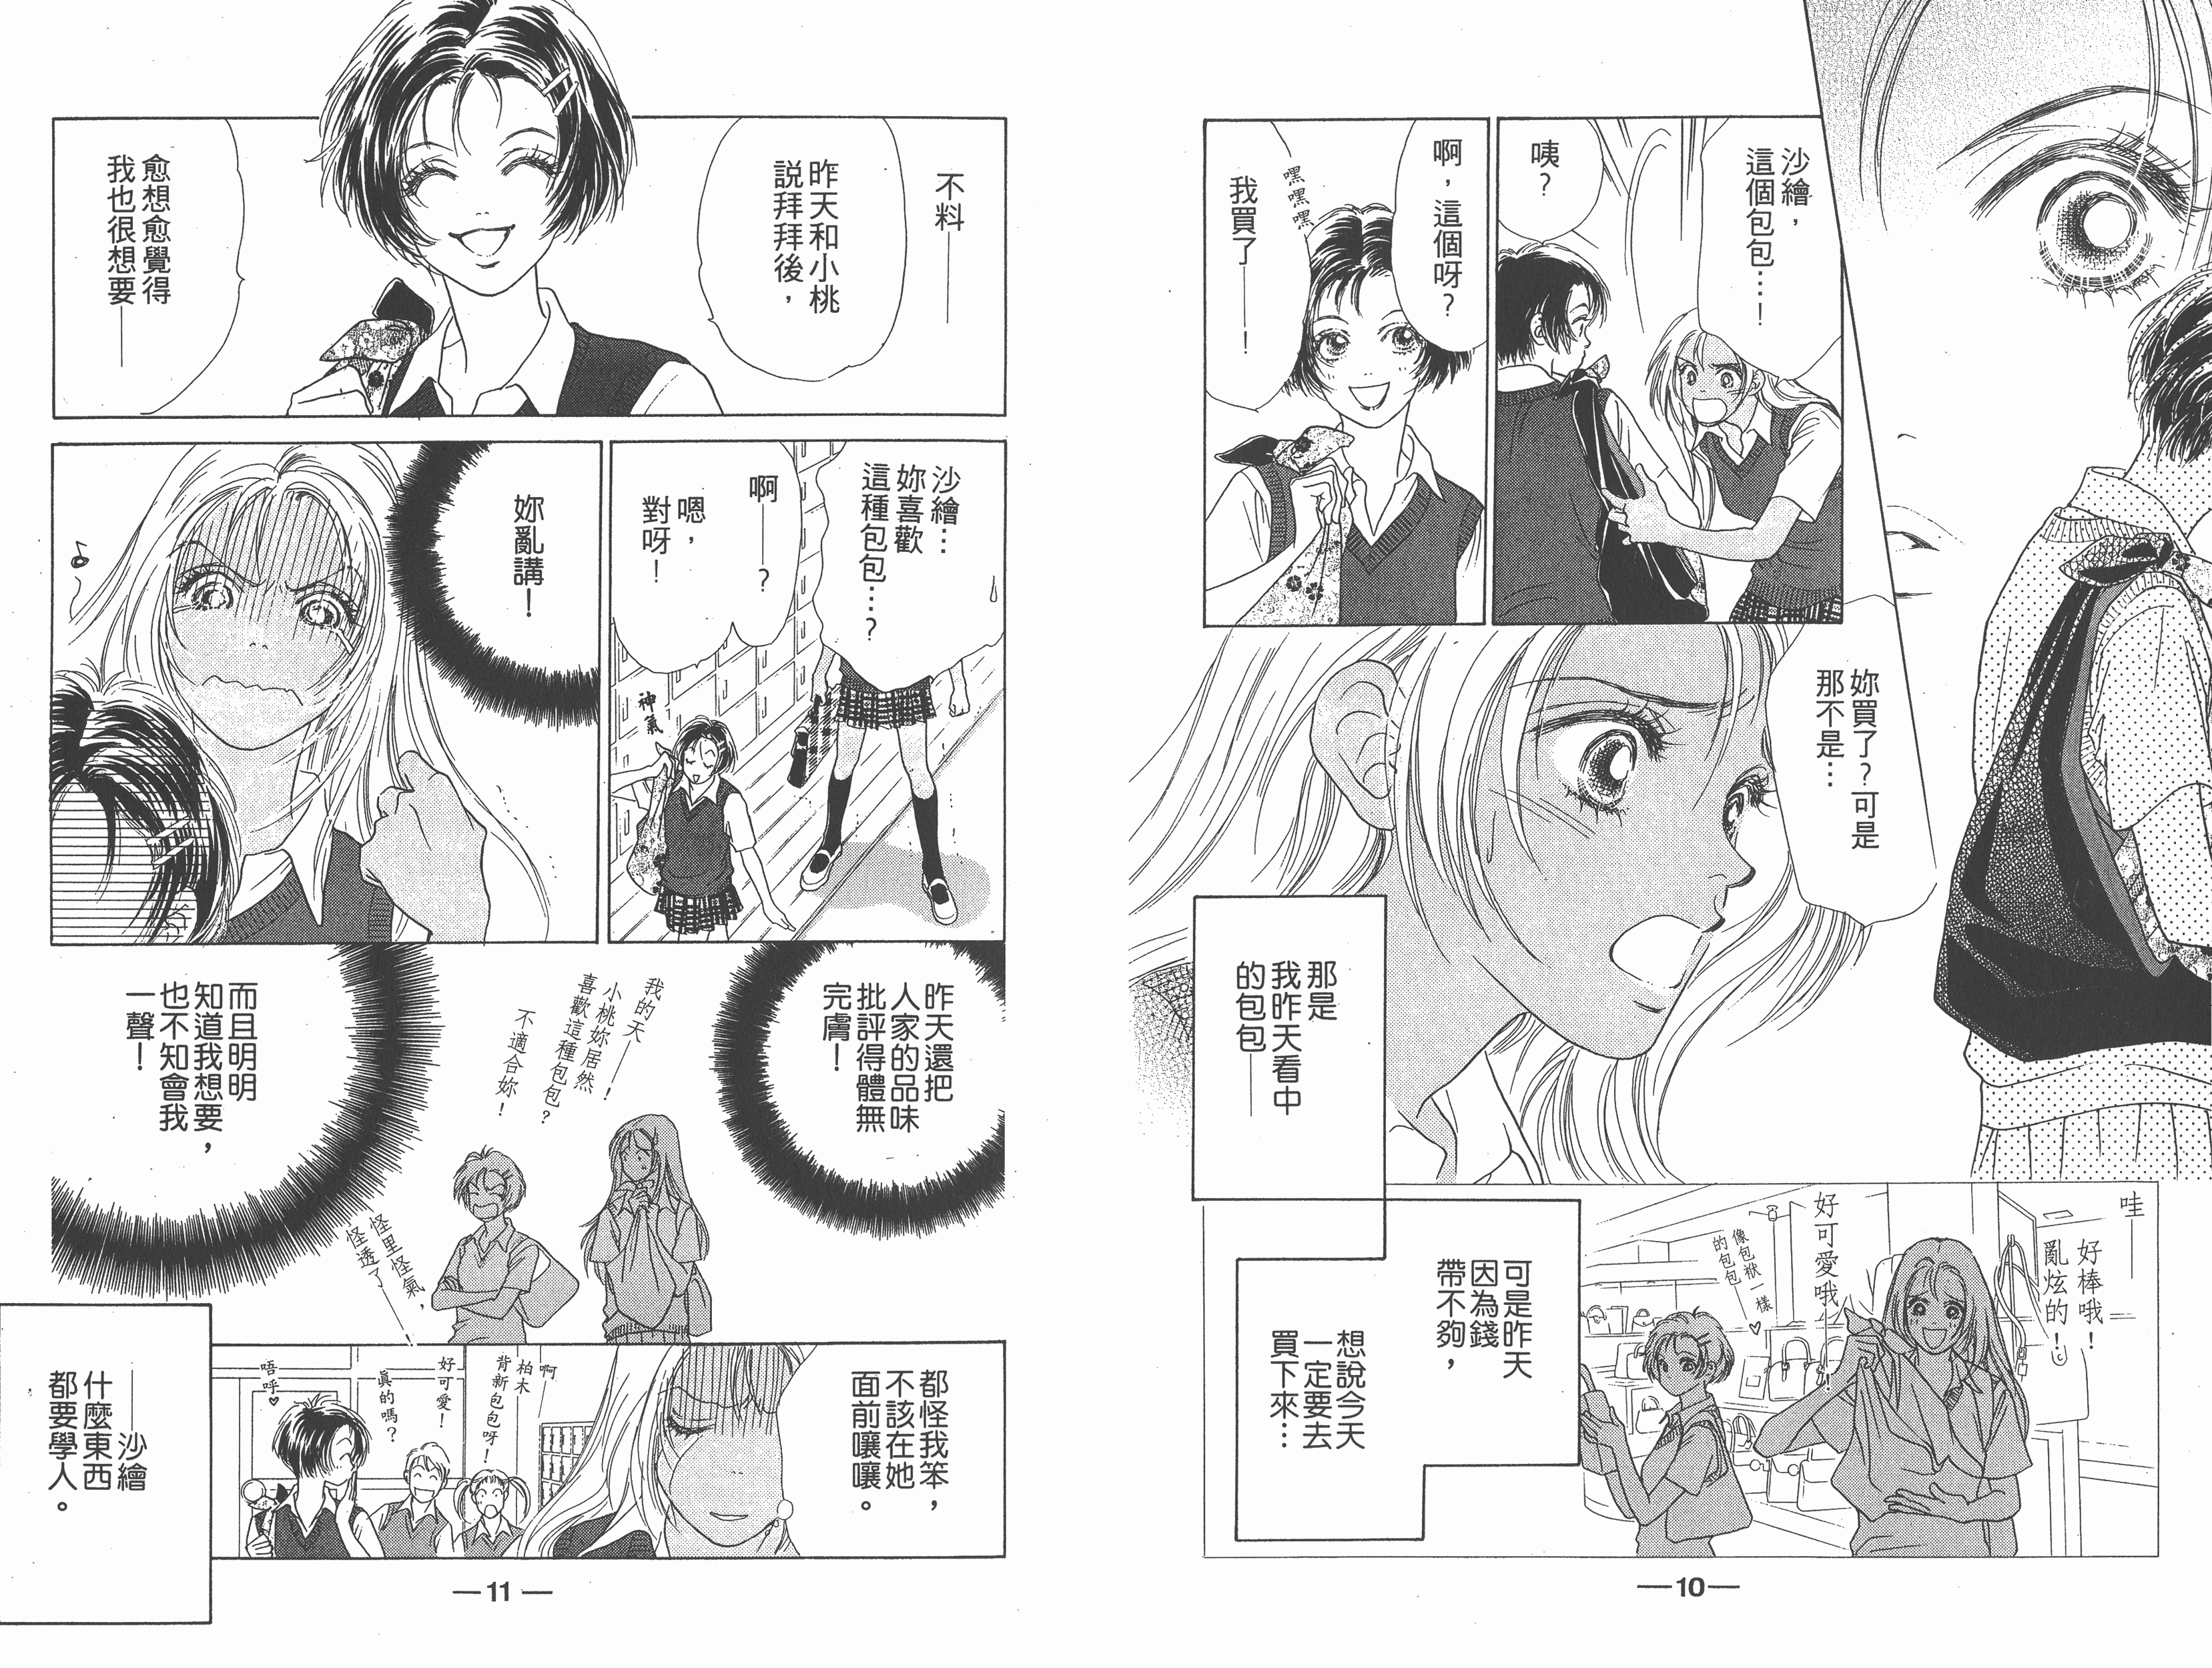 ☑漫画☑png☑蜜桃女孩☑18 卷+1 完☑作者：上田美和☑分类：爱情 校园☑东立出版